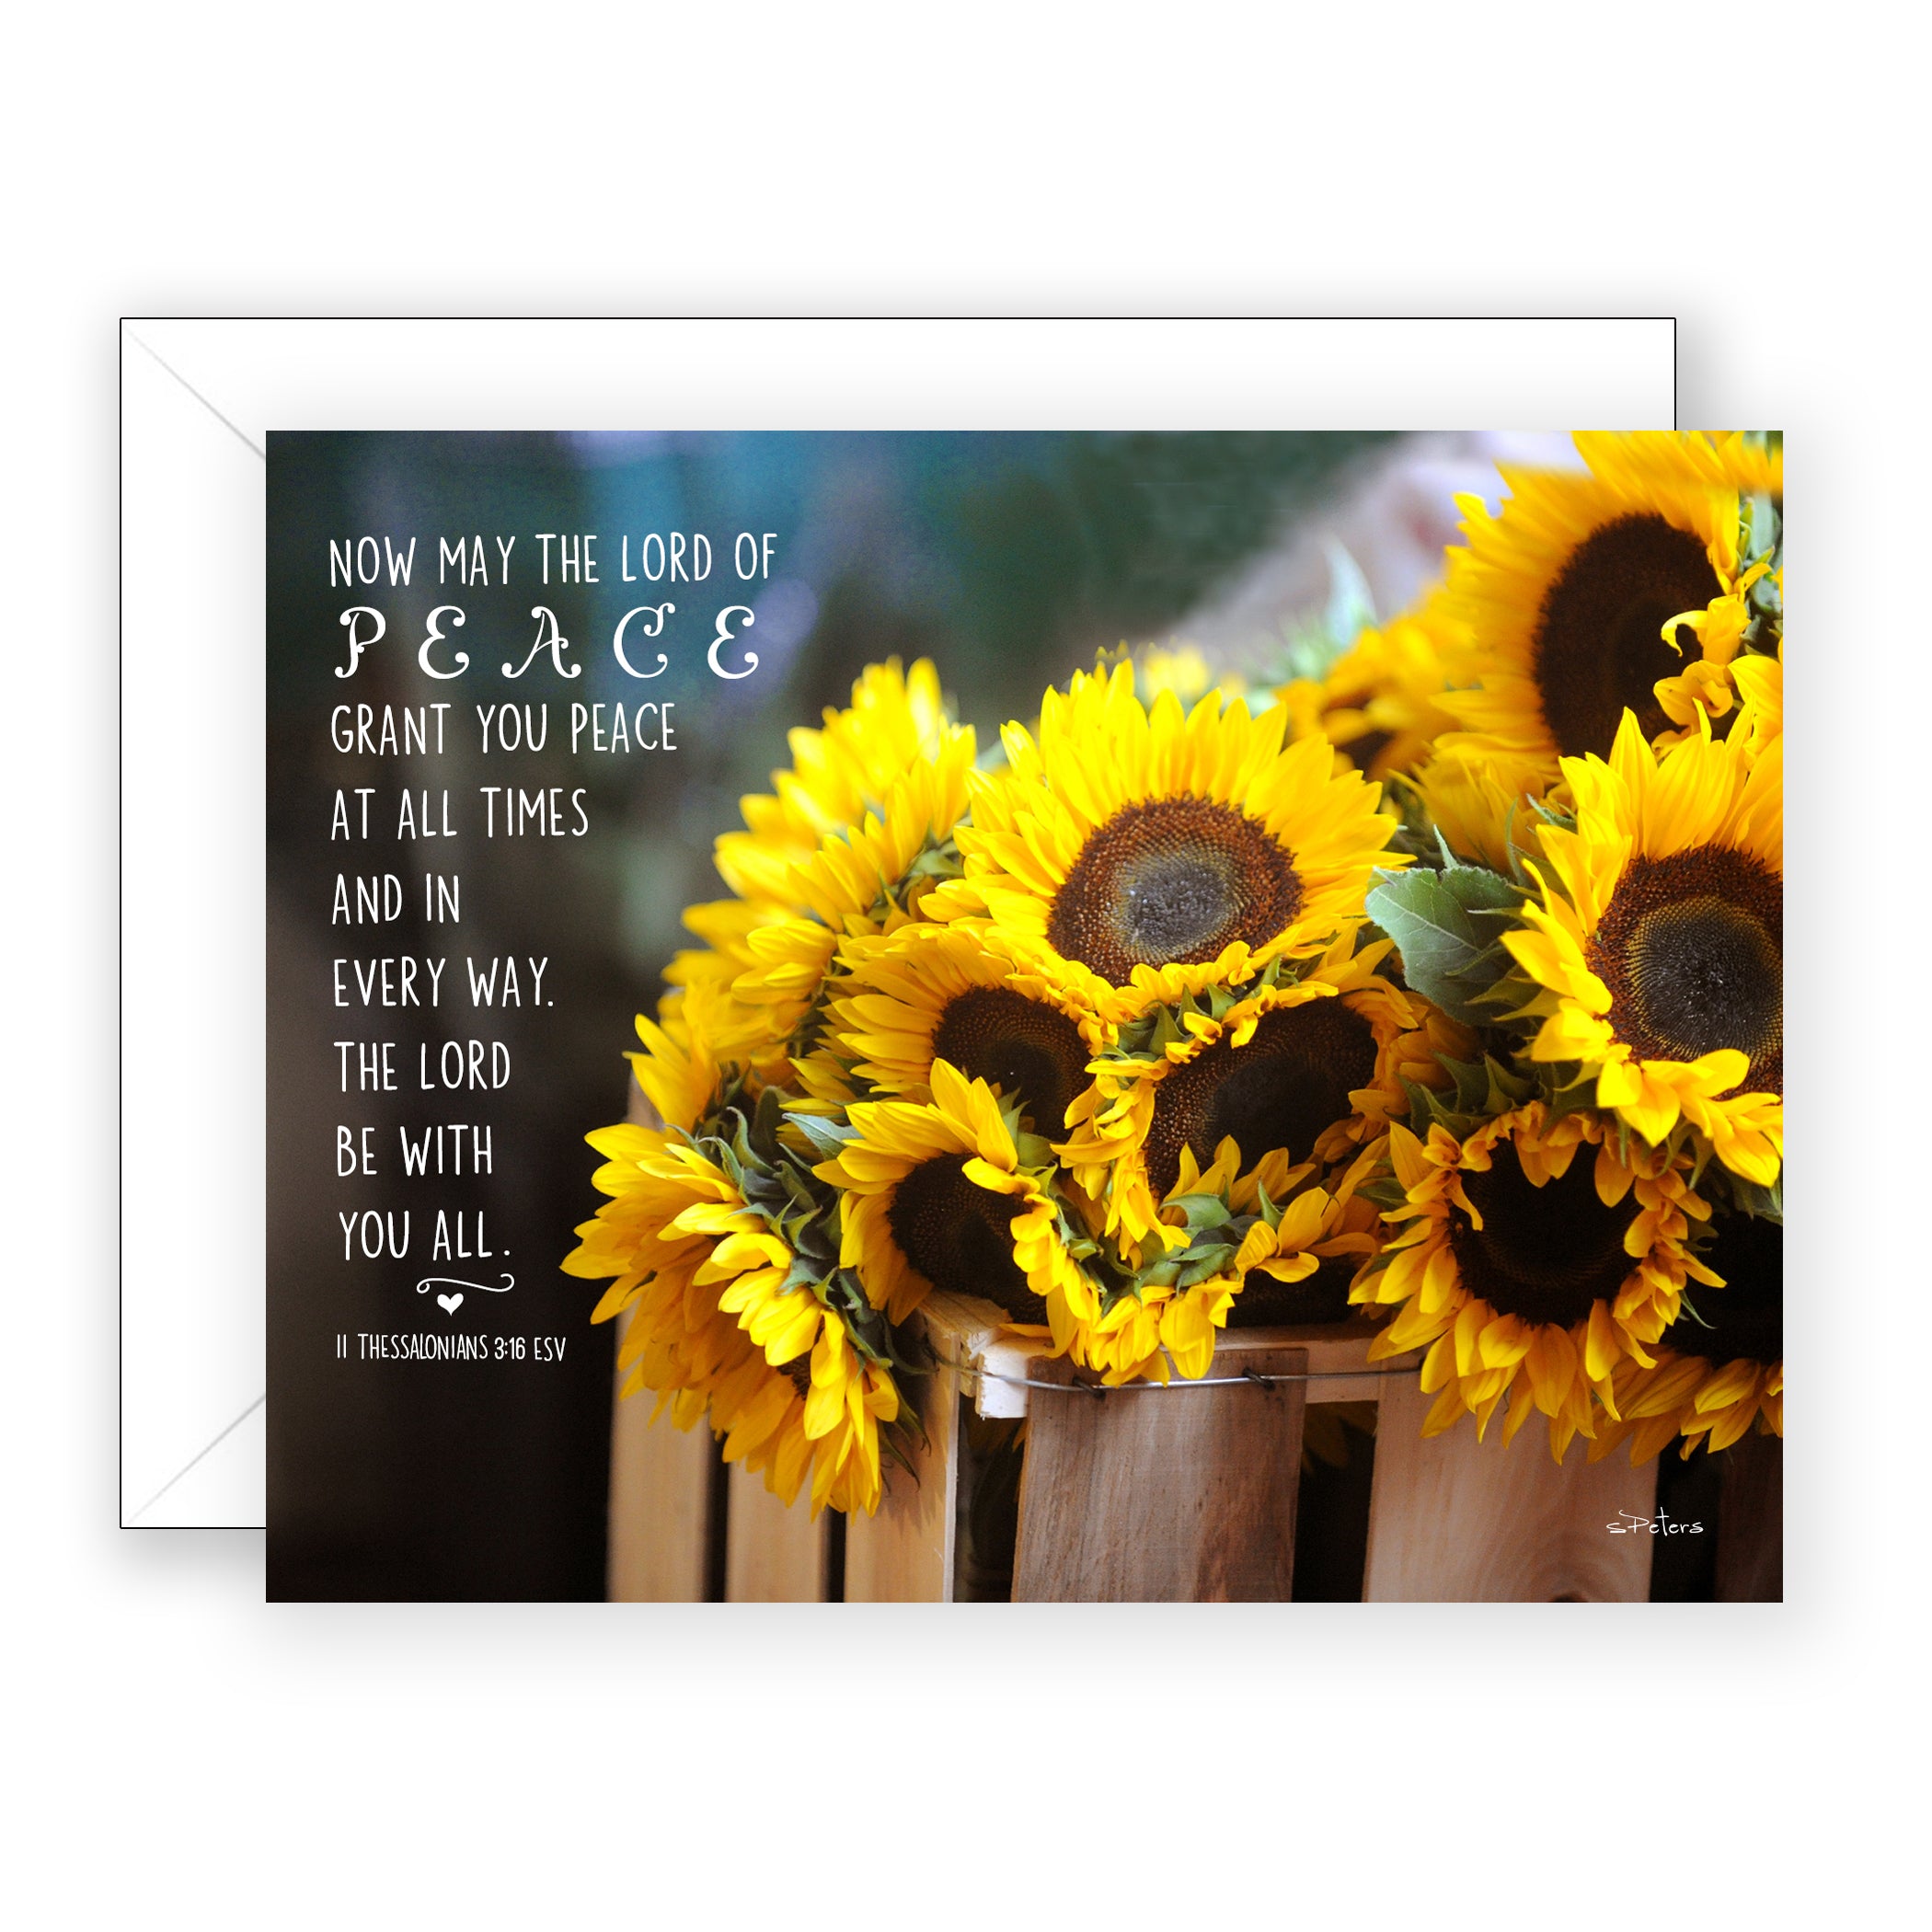 Sunflower Summer (II Thessalonians 3:16) - Encouragement Card (Blank)